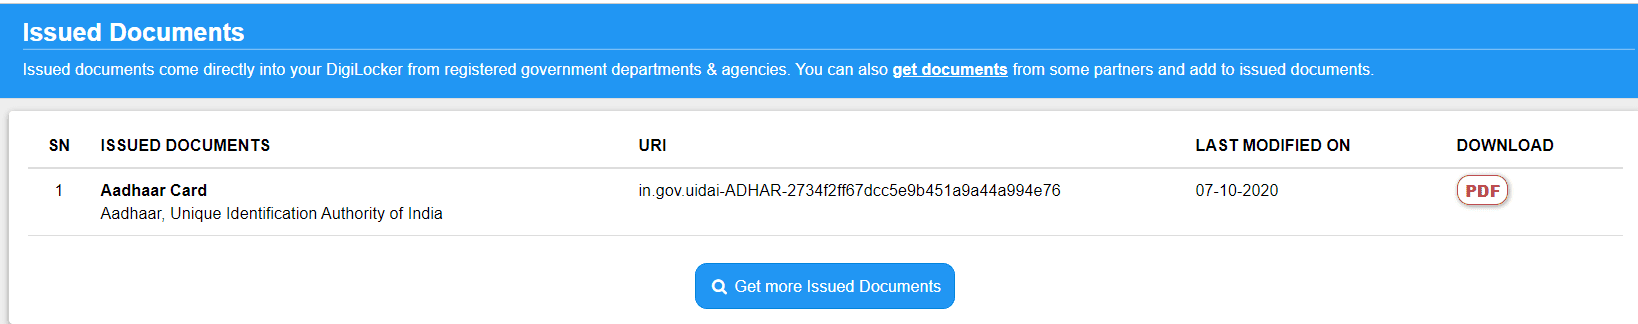 DigiLocker Fetch Issued Documents 